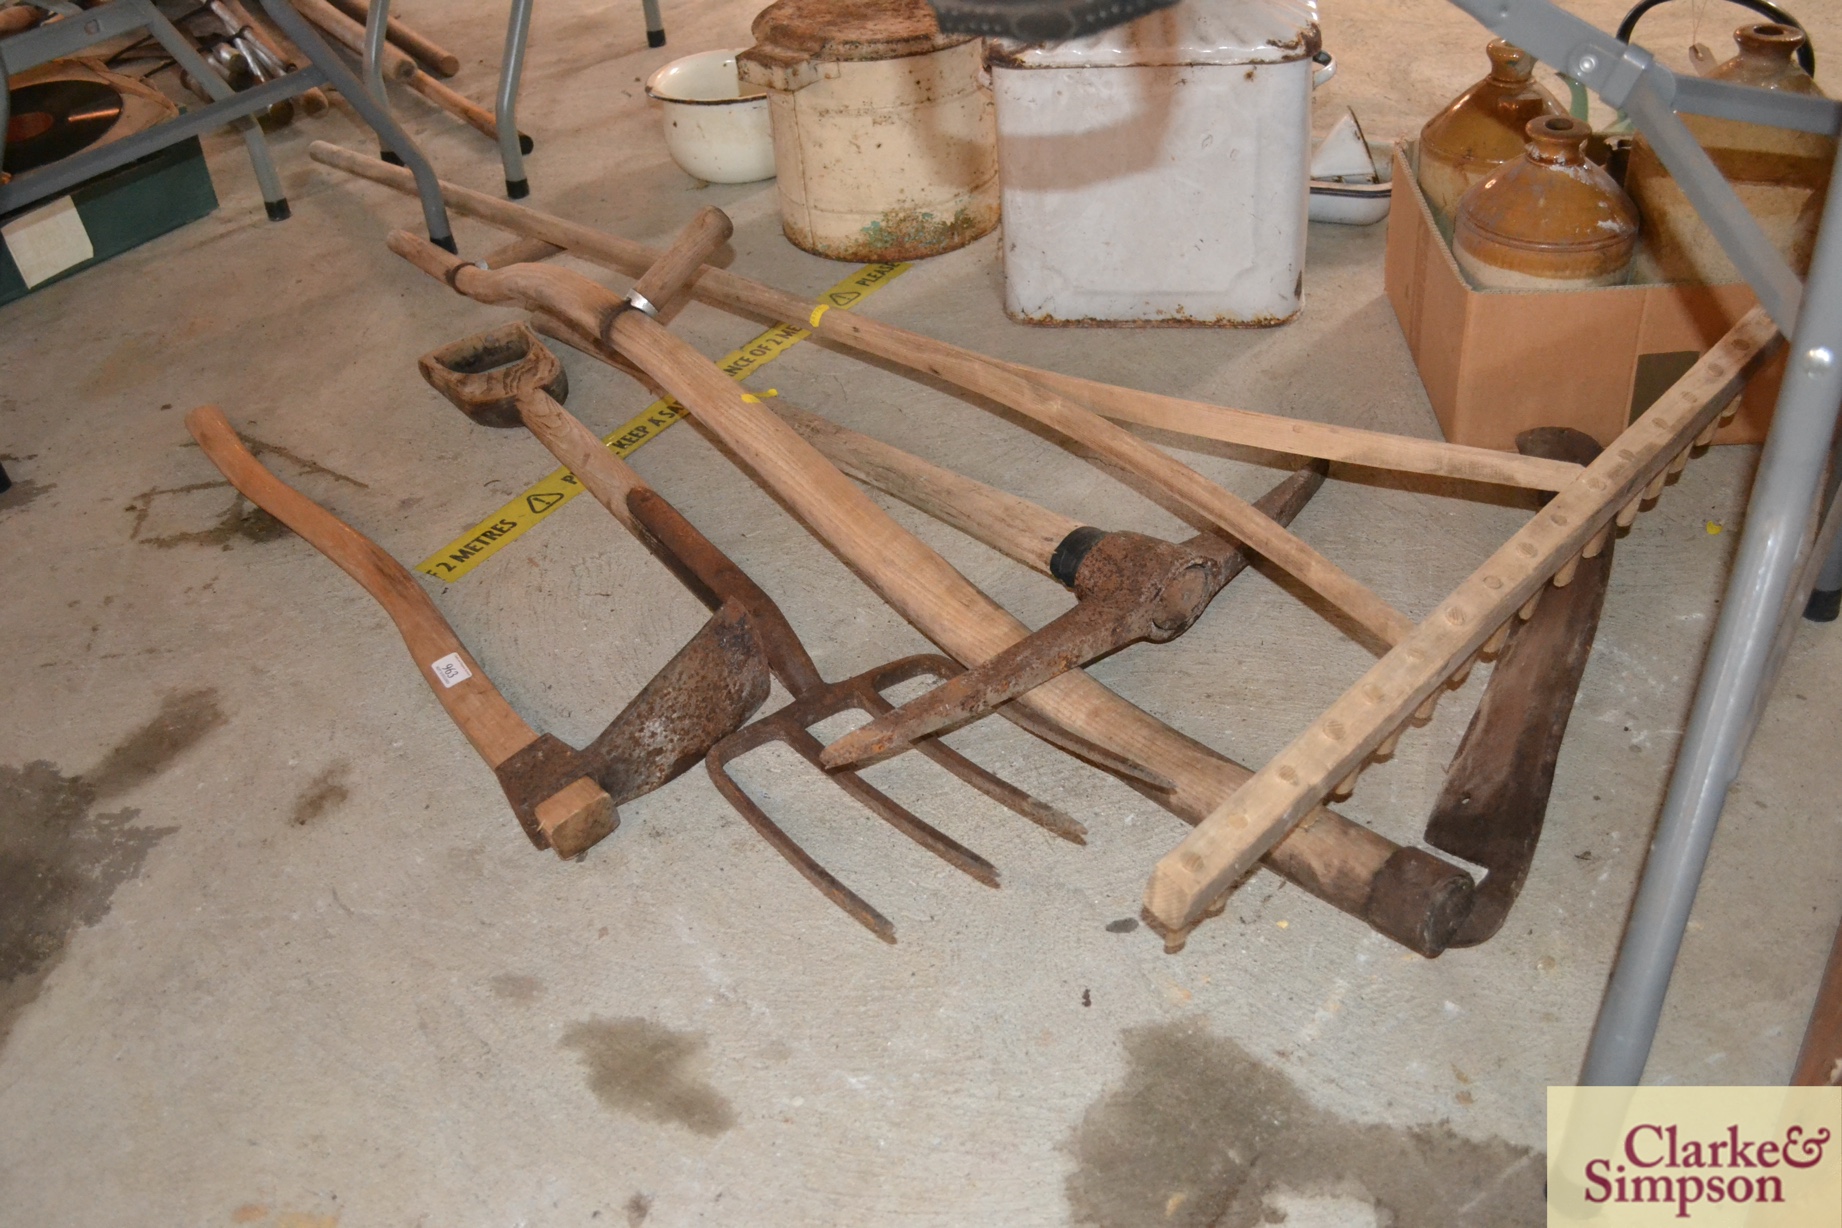 A vintage wooden rake, a scythe, a fork, a pick ax